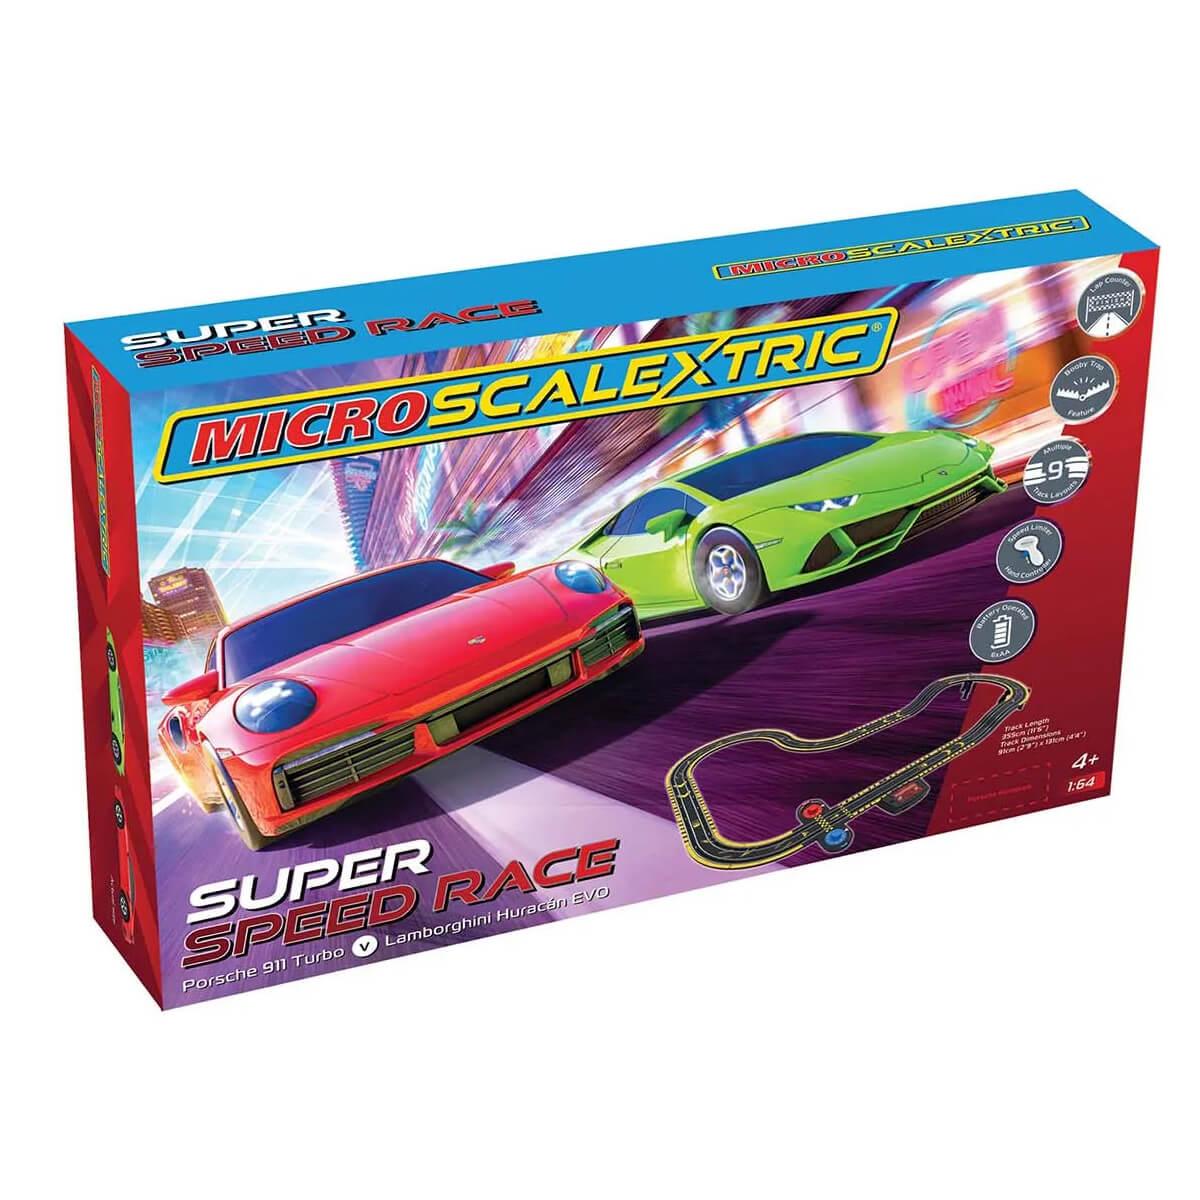 Circuit de voiture : Micro Scalextric : Super Speed Race Set - Lamborghini  vs Porsche - Jeux et jouets Scalextric - Avenue des Jeux